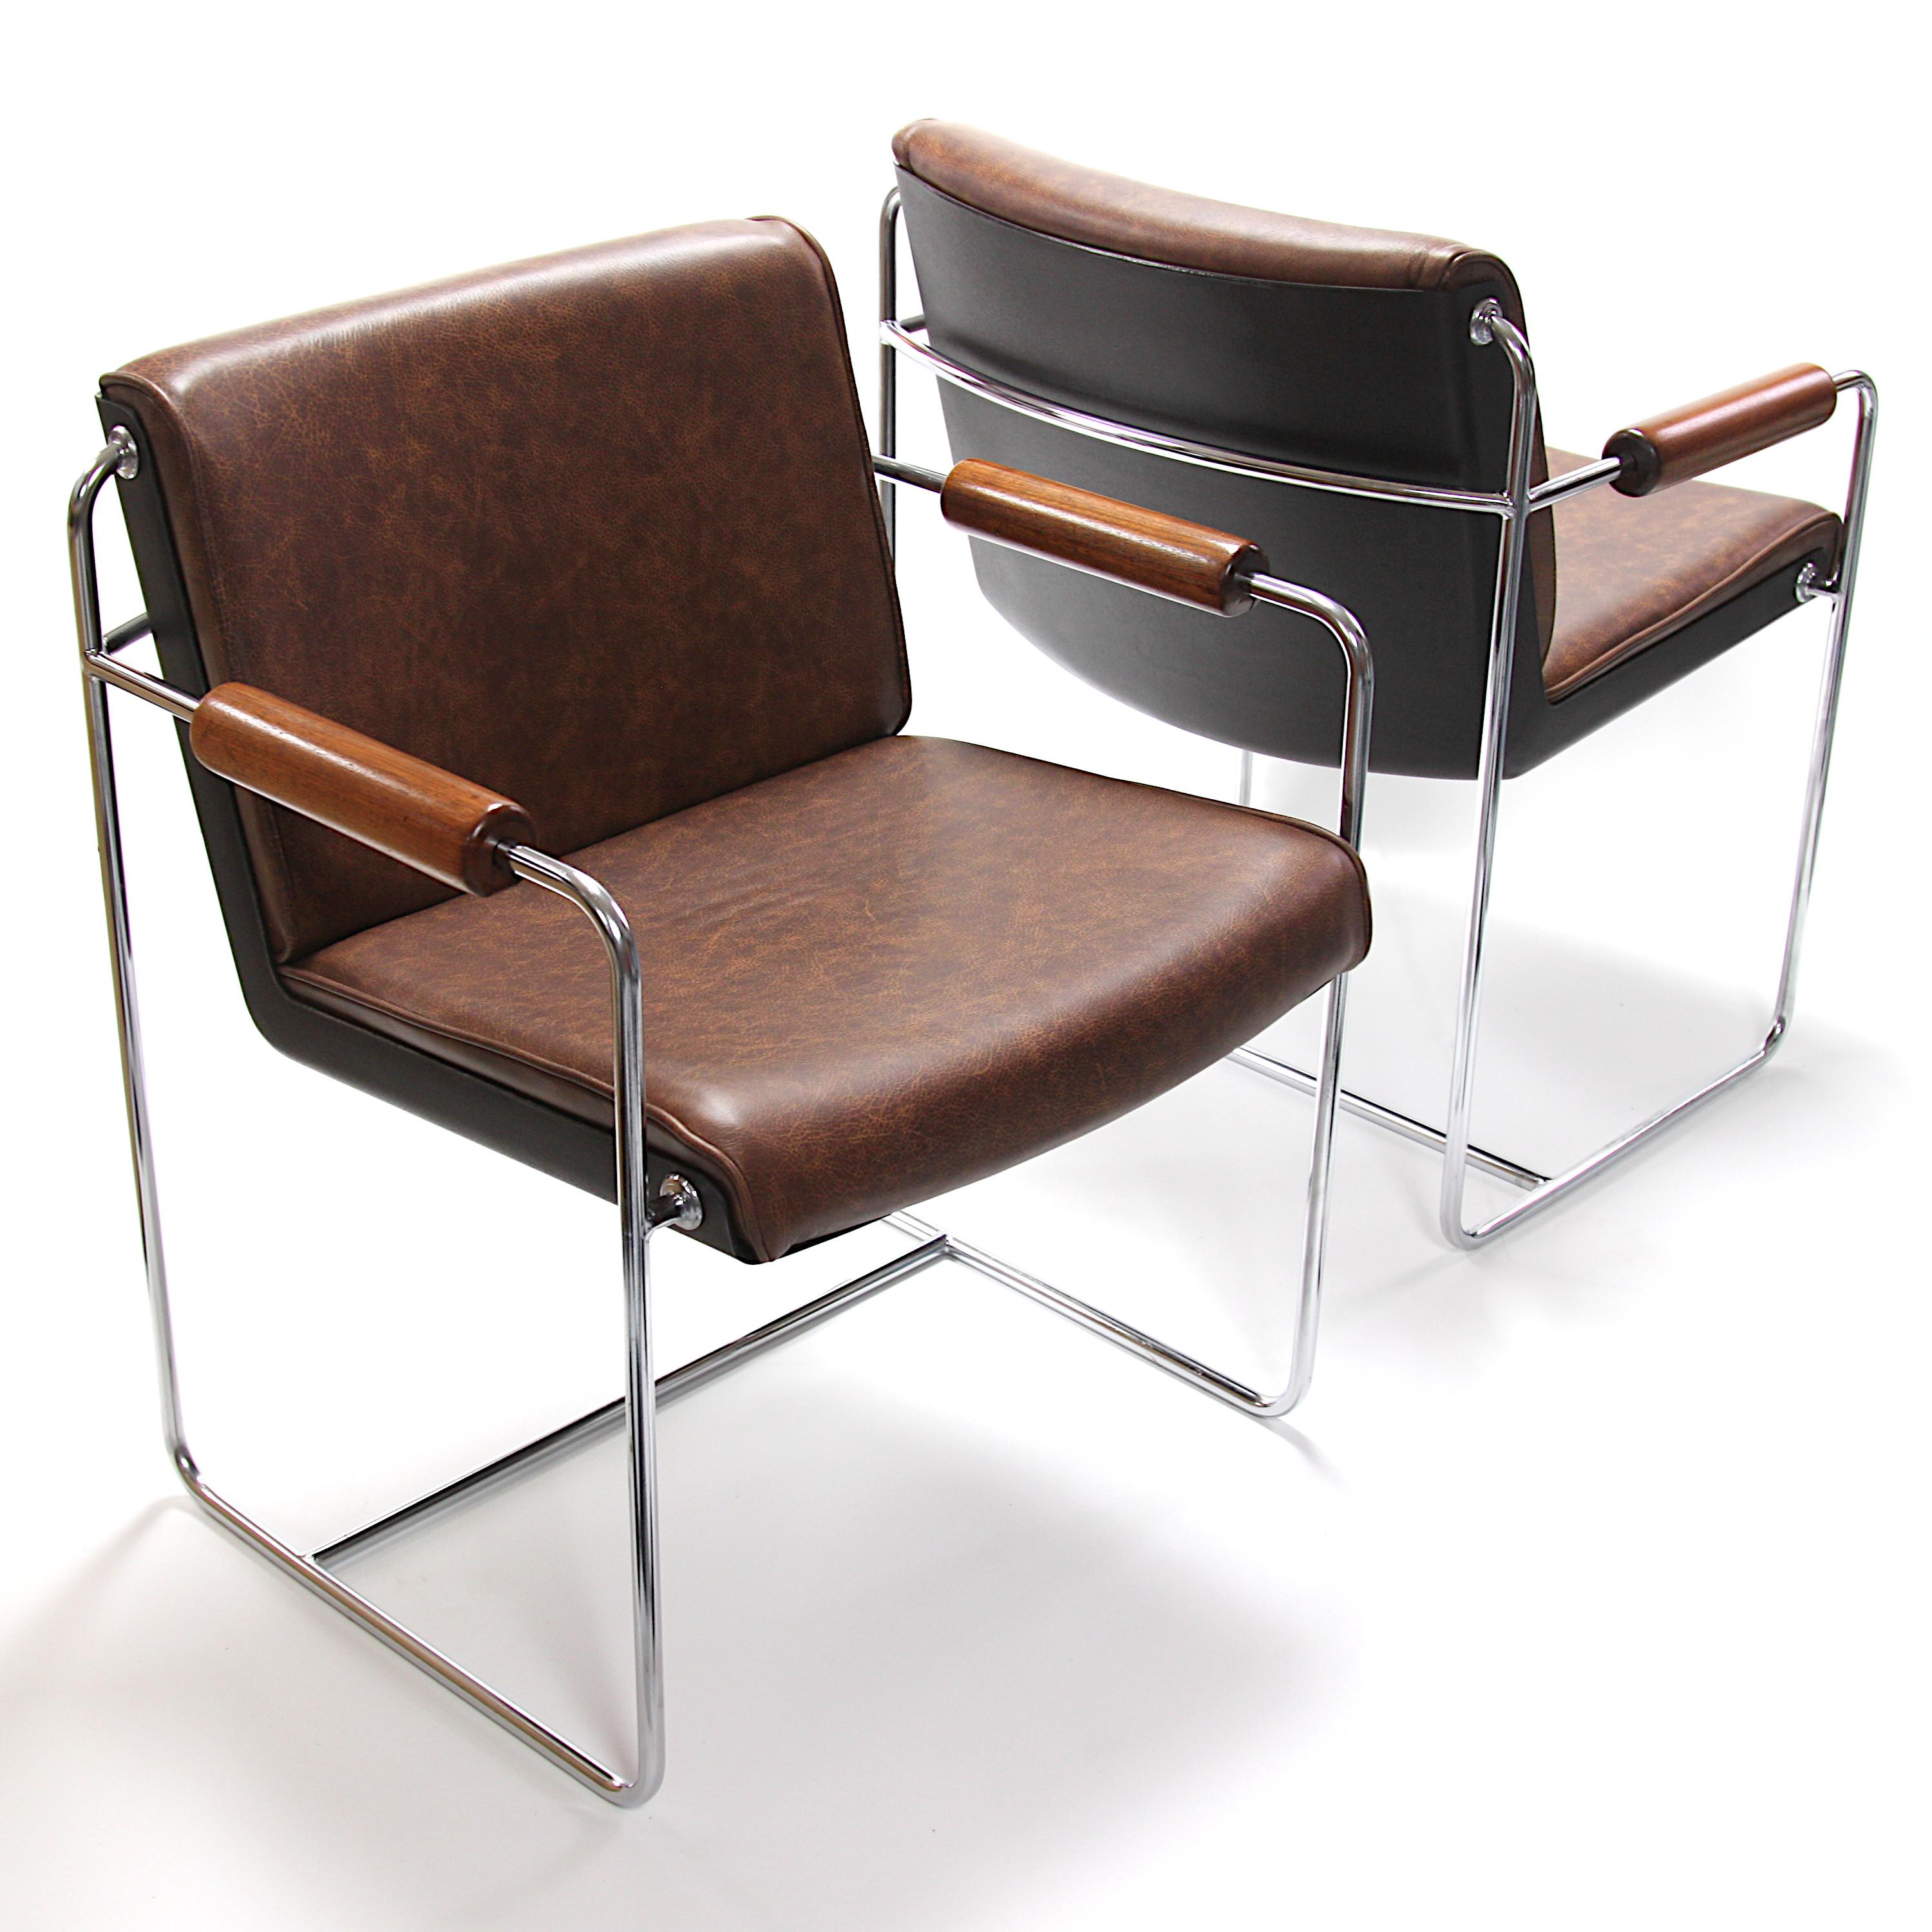 Merveilleuse paire de chaises d'invités/de côté AFKA rares des années 1960 par Krueger metal products. Ces chaises présentent une coque en fibre de verre blanche, une structure en acier chromé et des accoudoirs en noyer massif. Les chaises ont été